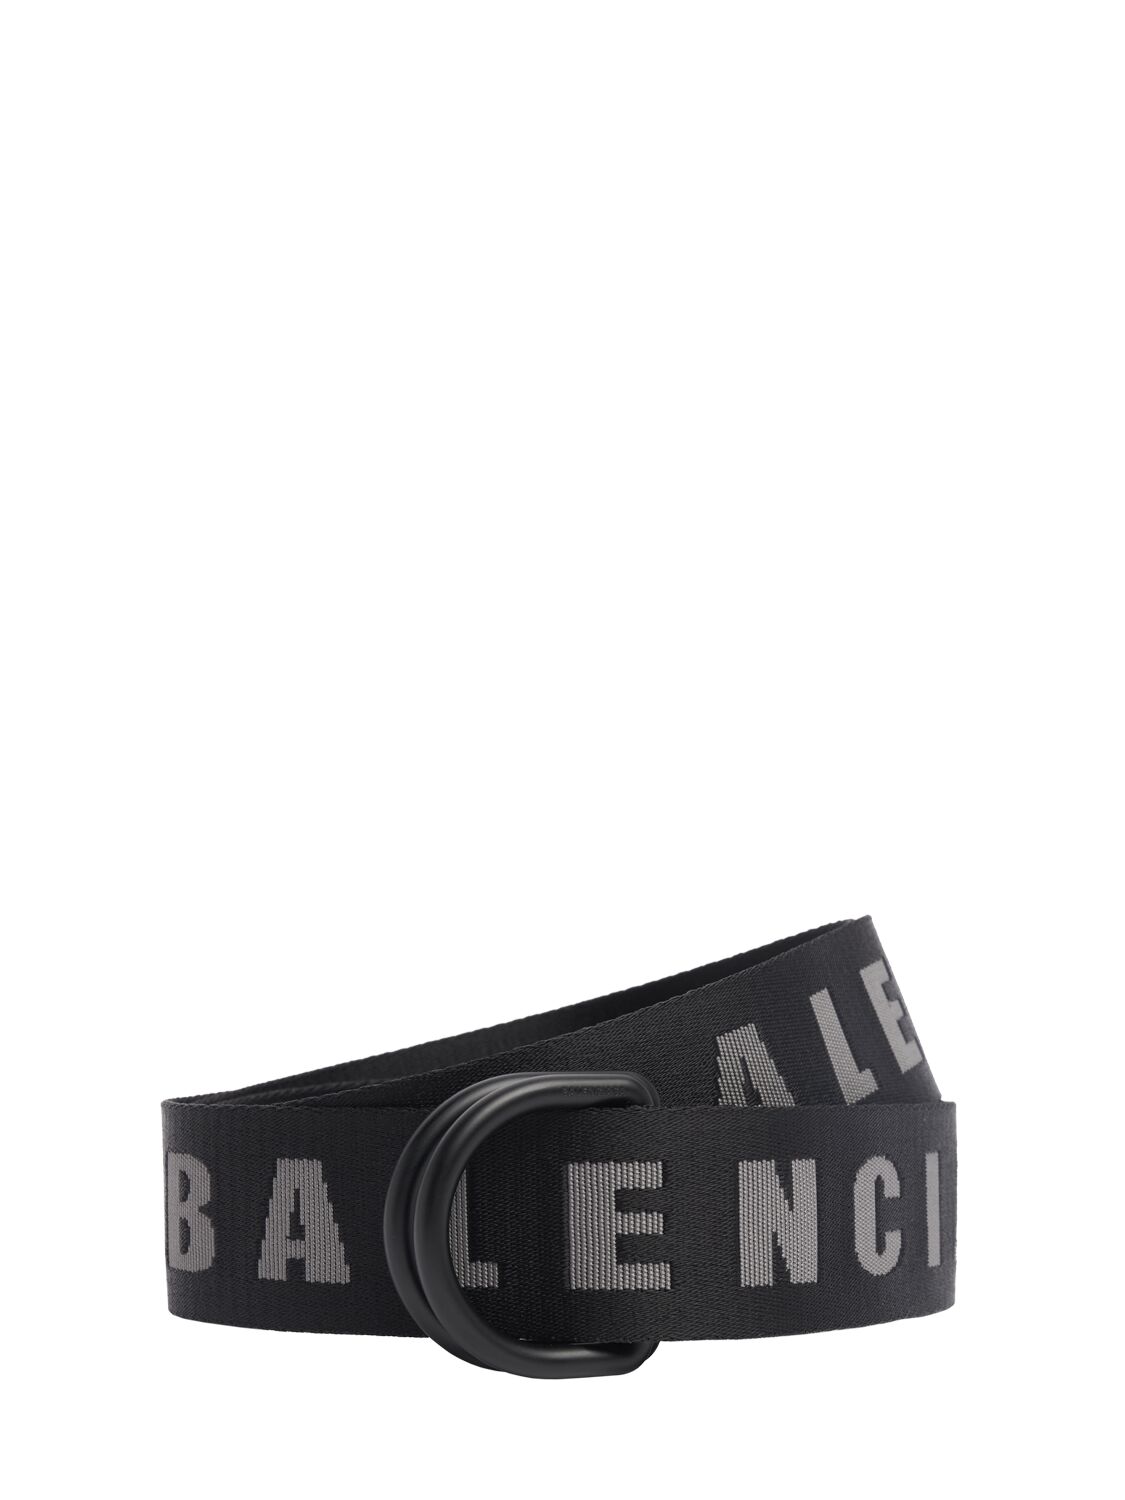 Balenciaga 4cm D Ring Nylon Belt In Black/dark Grey